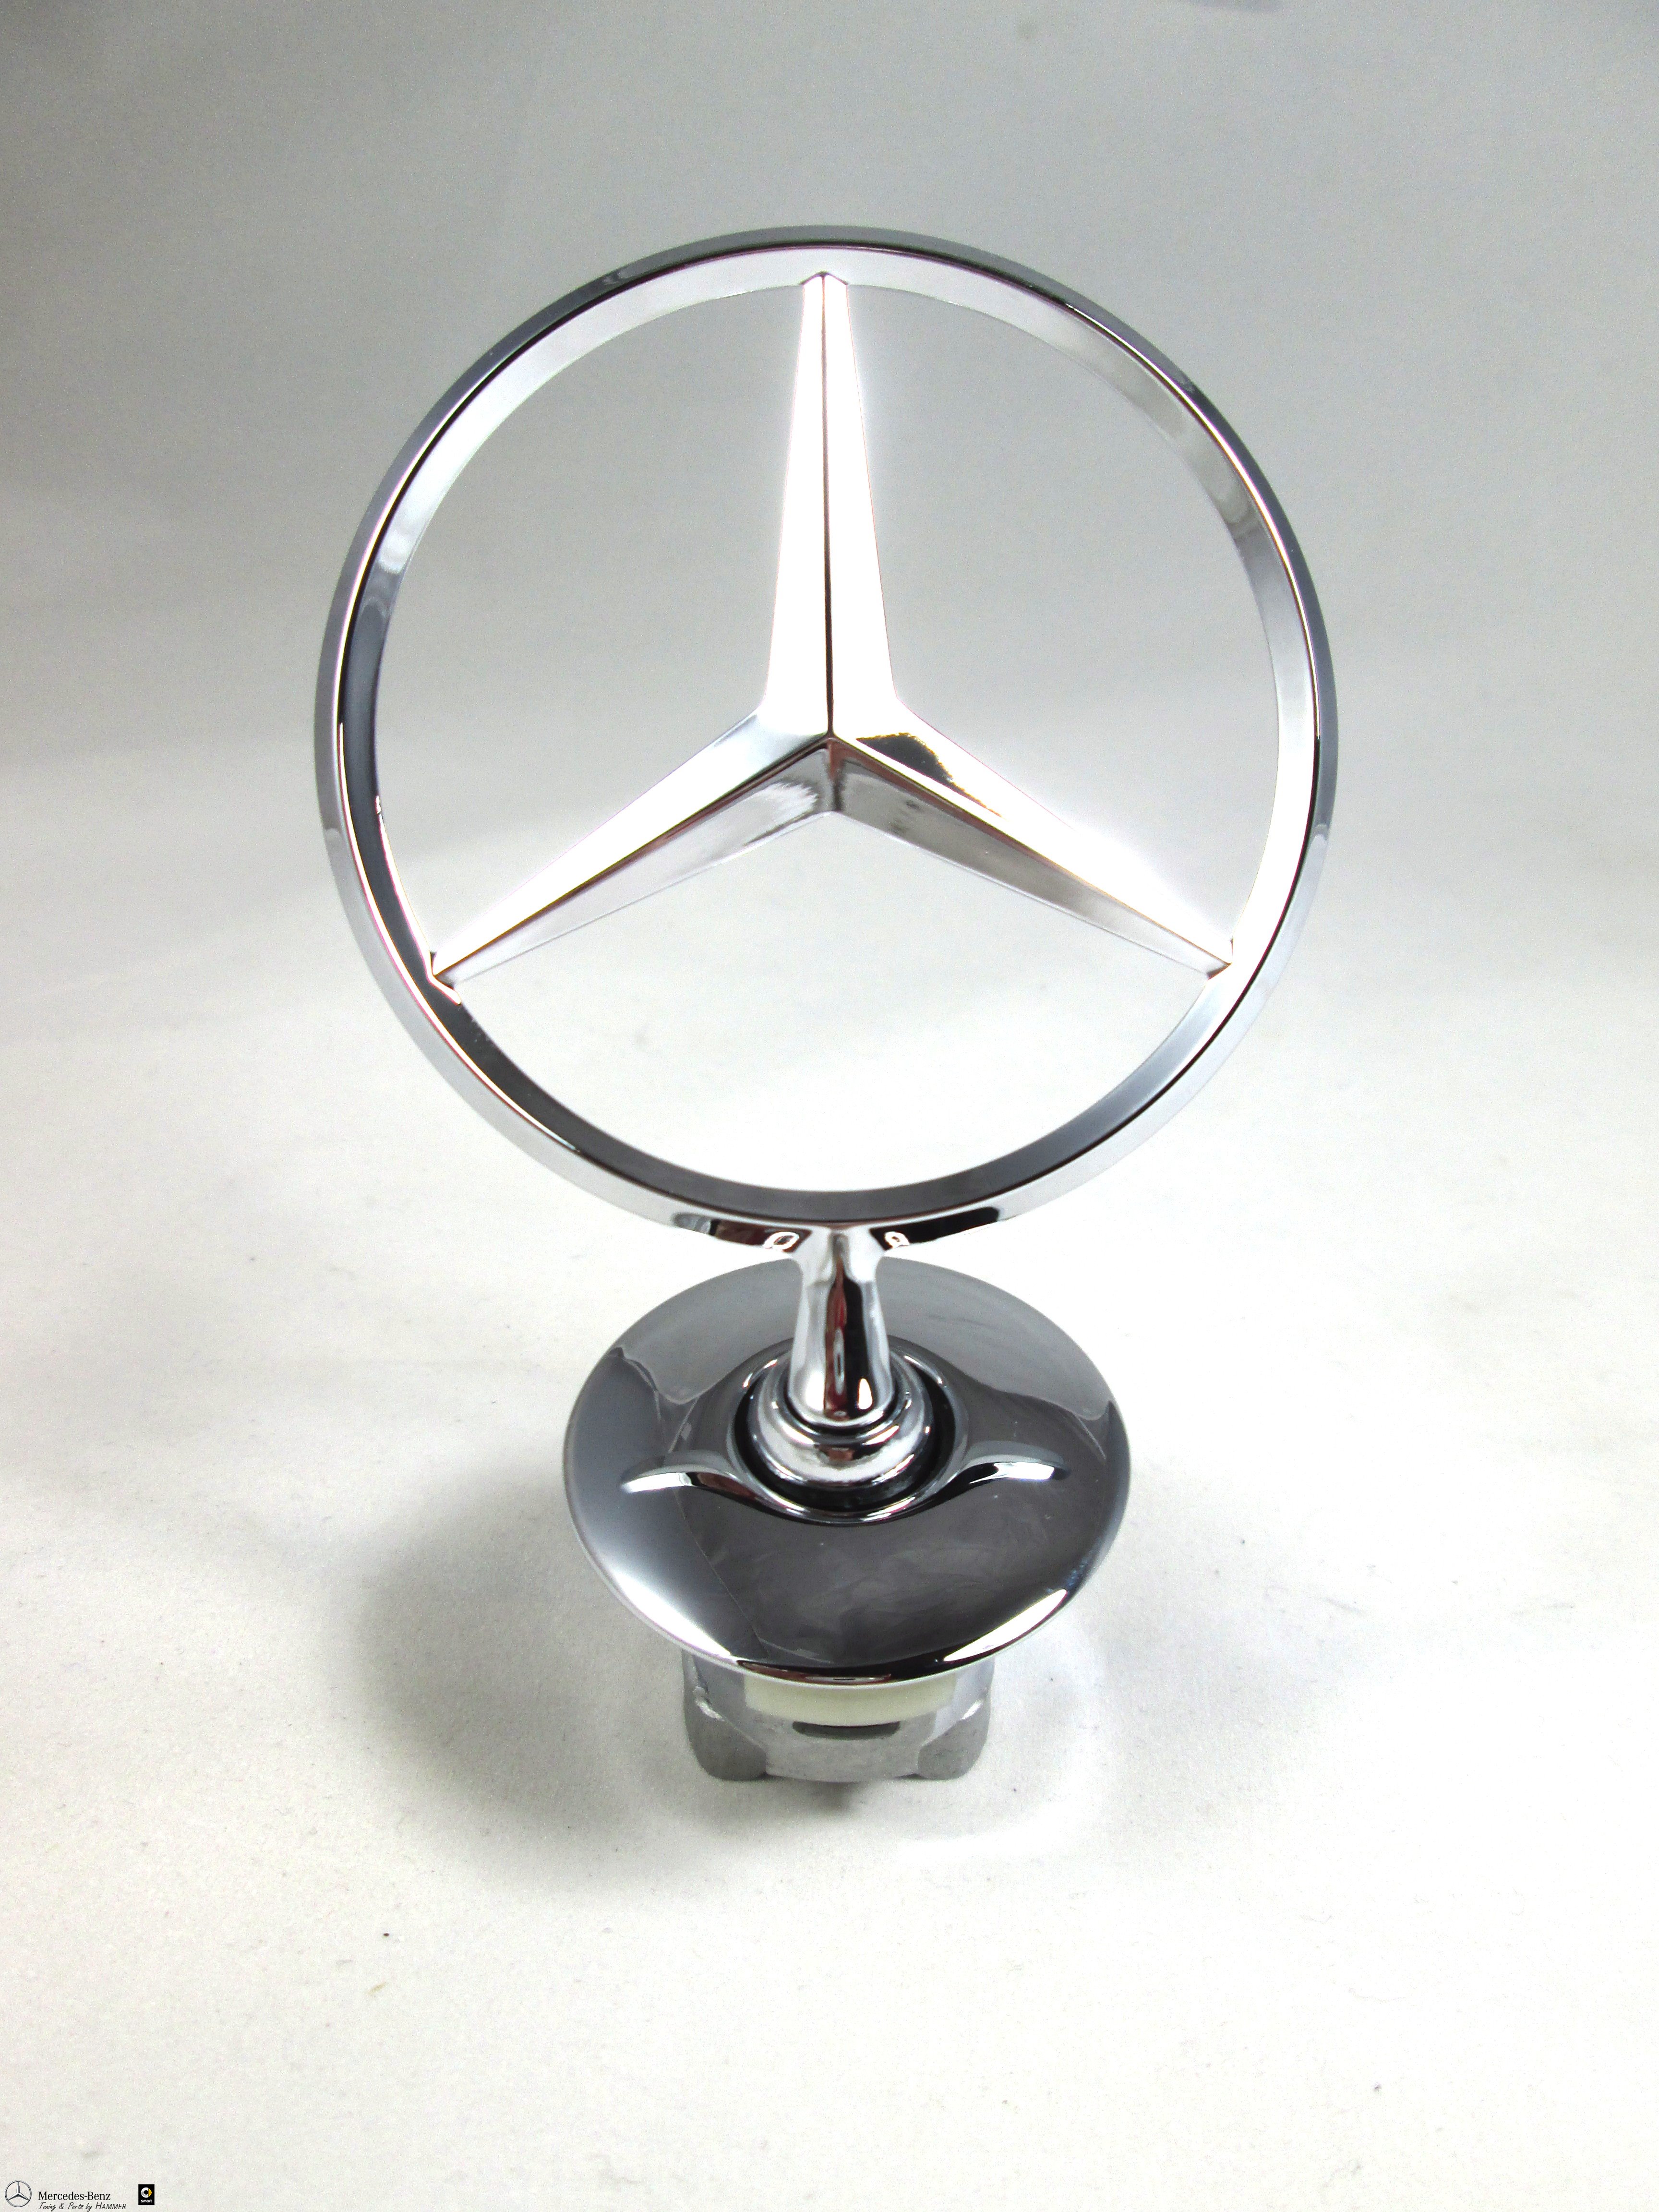 Original Mercedes-Benz Stern Motorhaube Aufsteller C-/ S-Klasse W